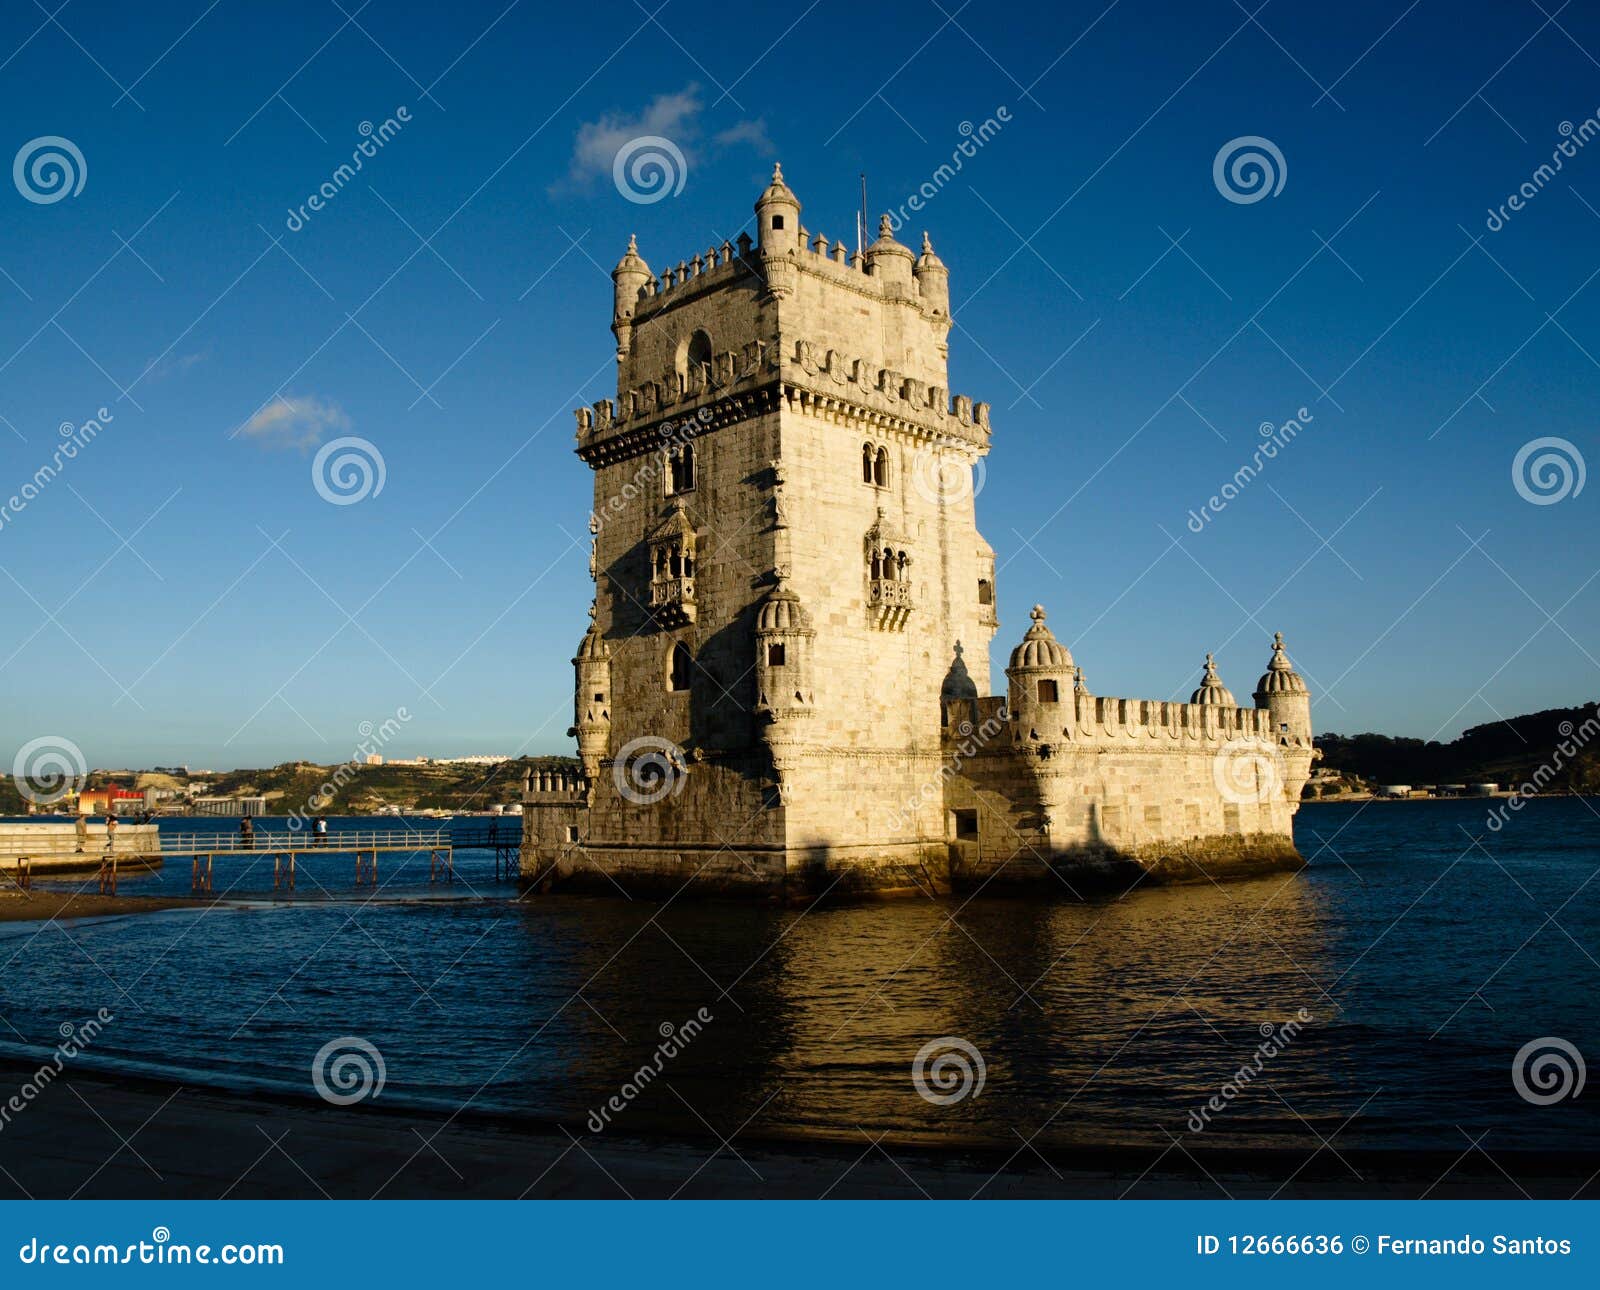 torre de belem - lisboa - portugal